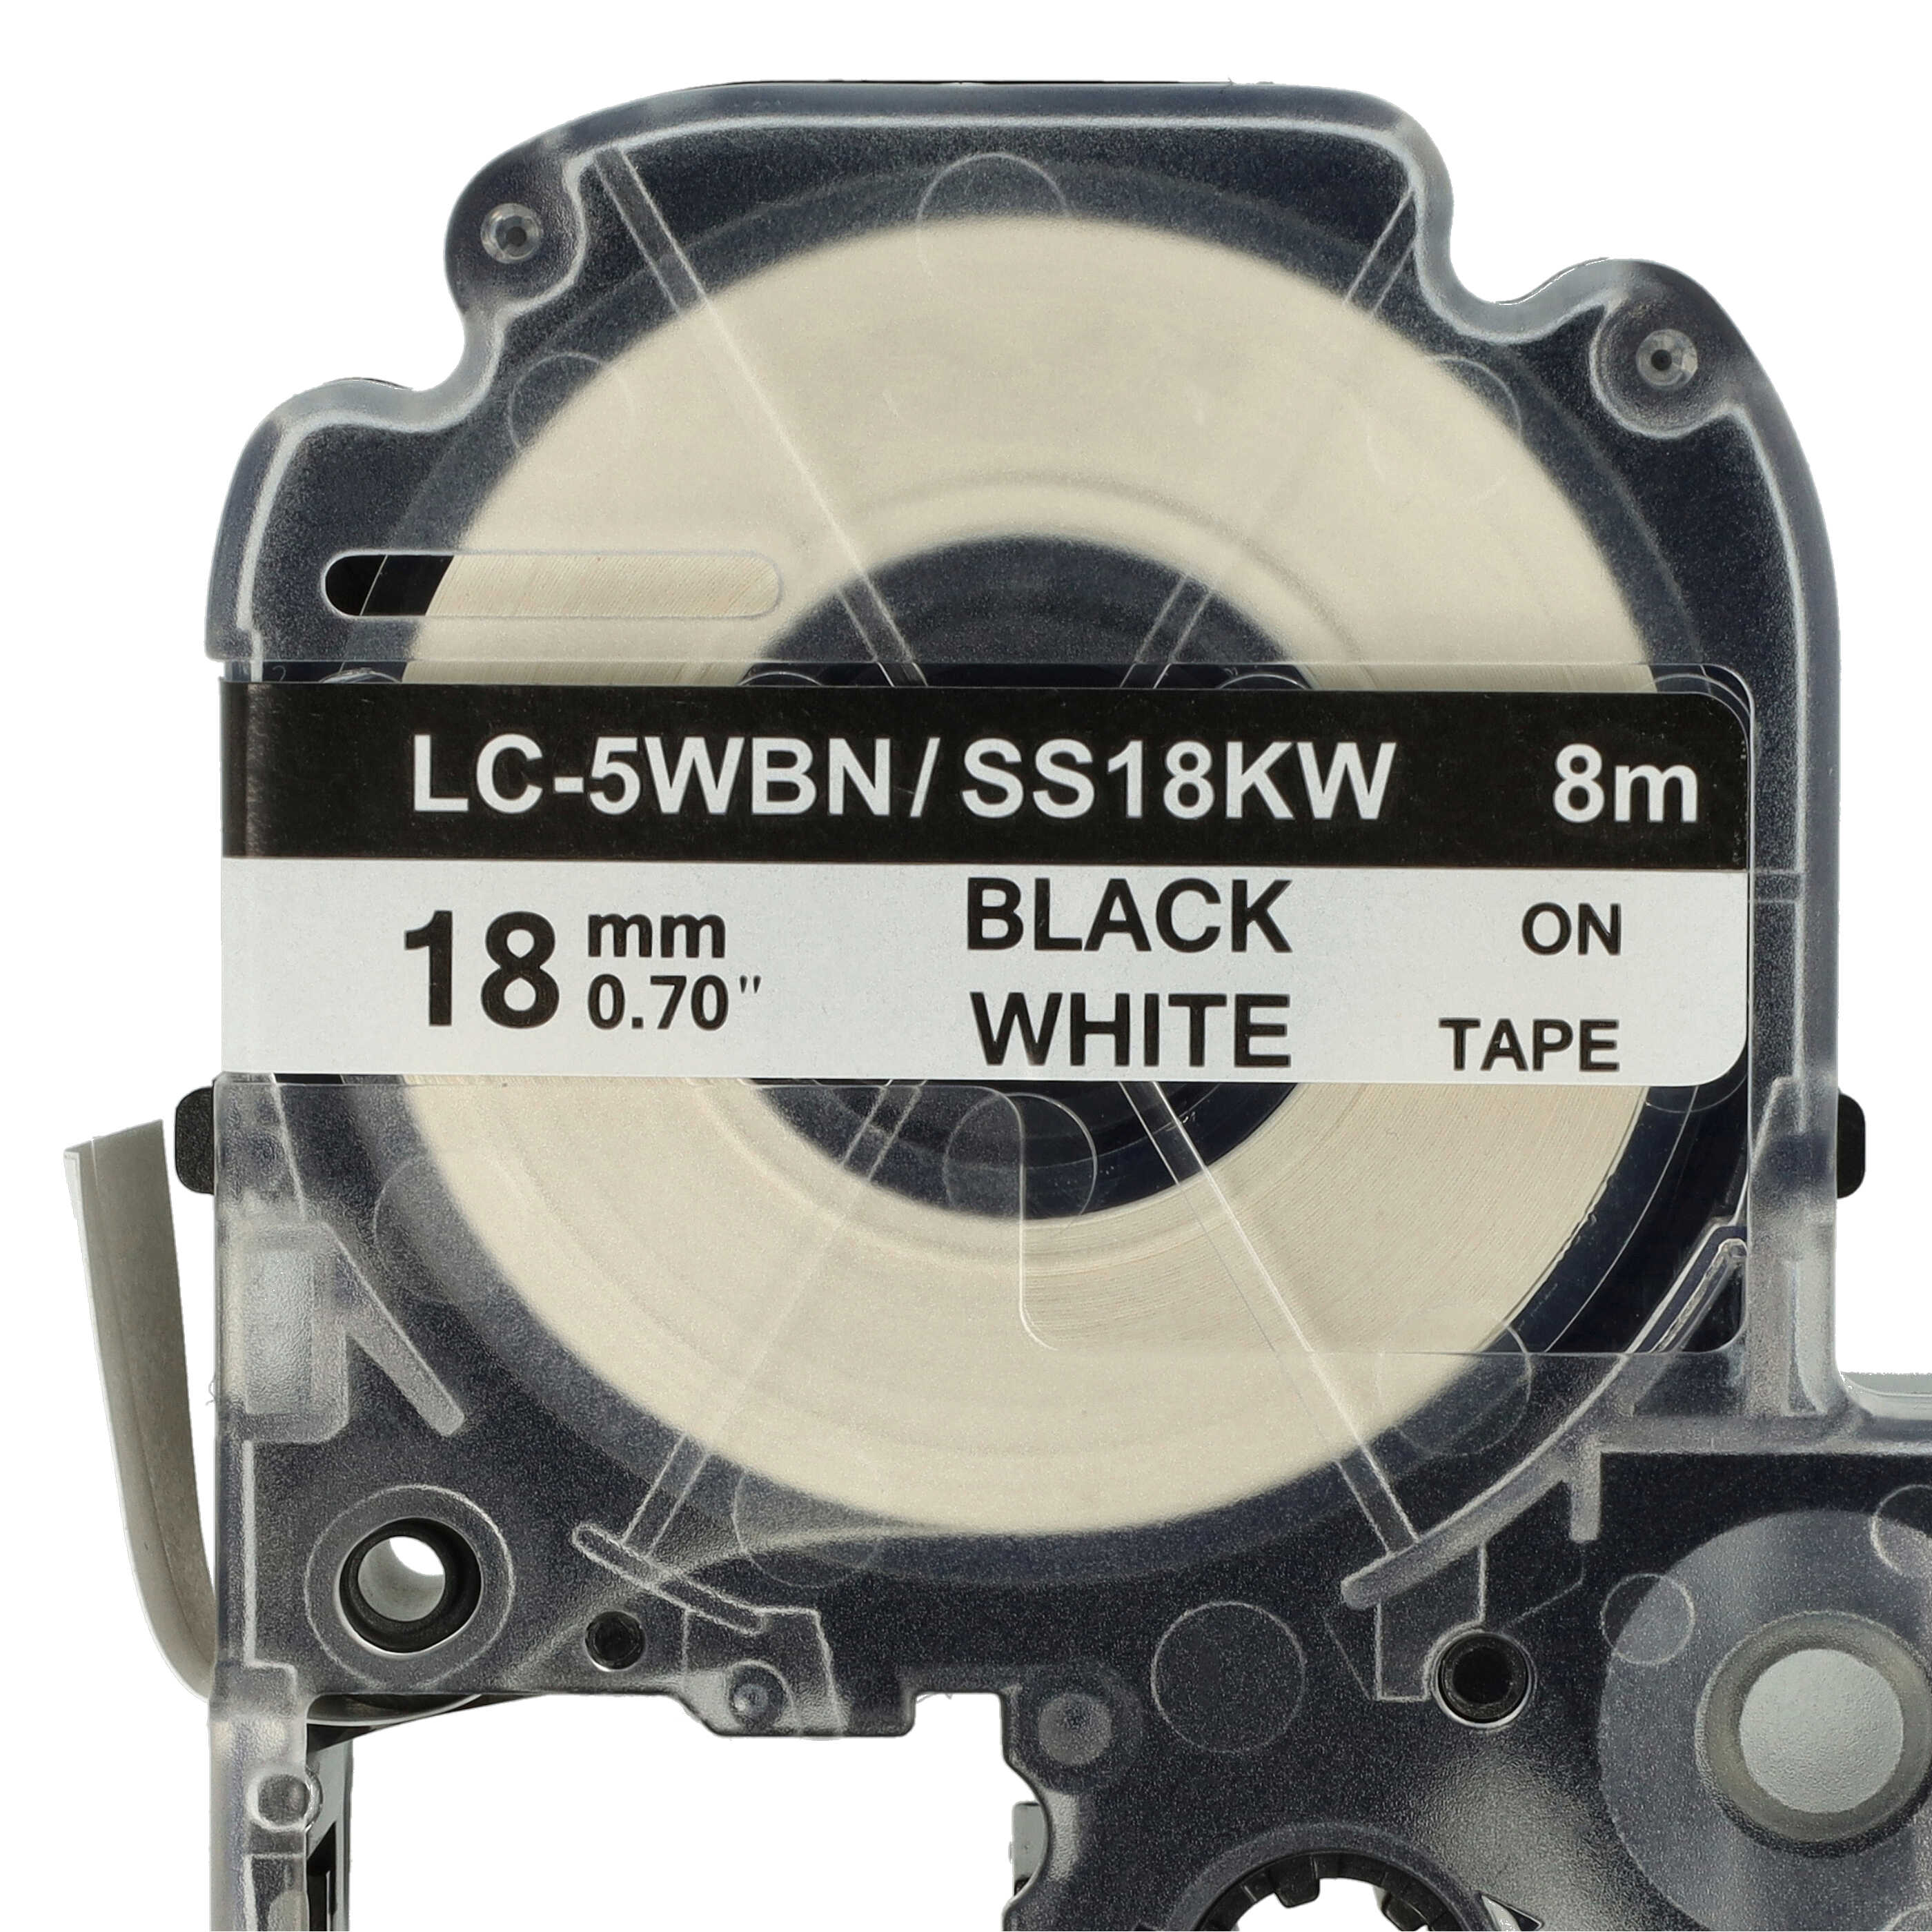 10x Taśma do etykiet zam. Epson SS18KW, LC-5WBN - 18mm, napis czarny / taśma biała